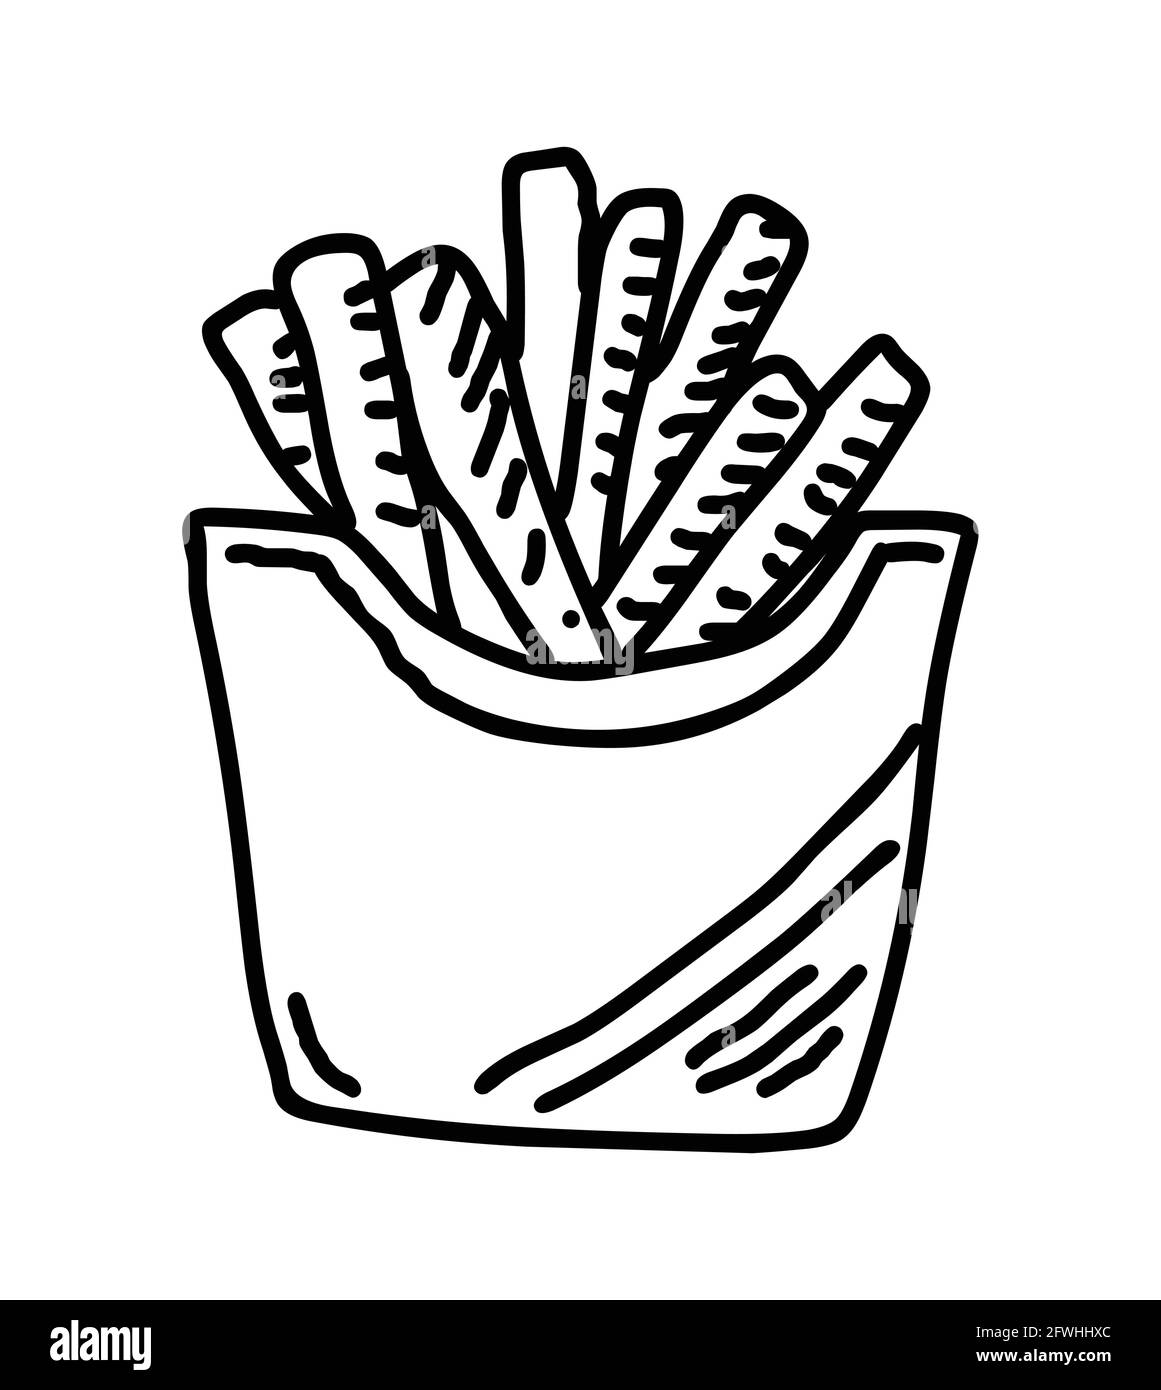 Handgezeichneter Illustrationsvektor für Pommes Frites auf weißem Hintergrund Stock Vektor